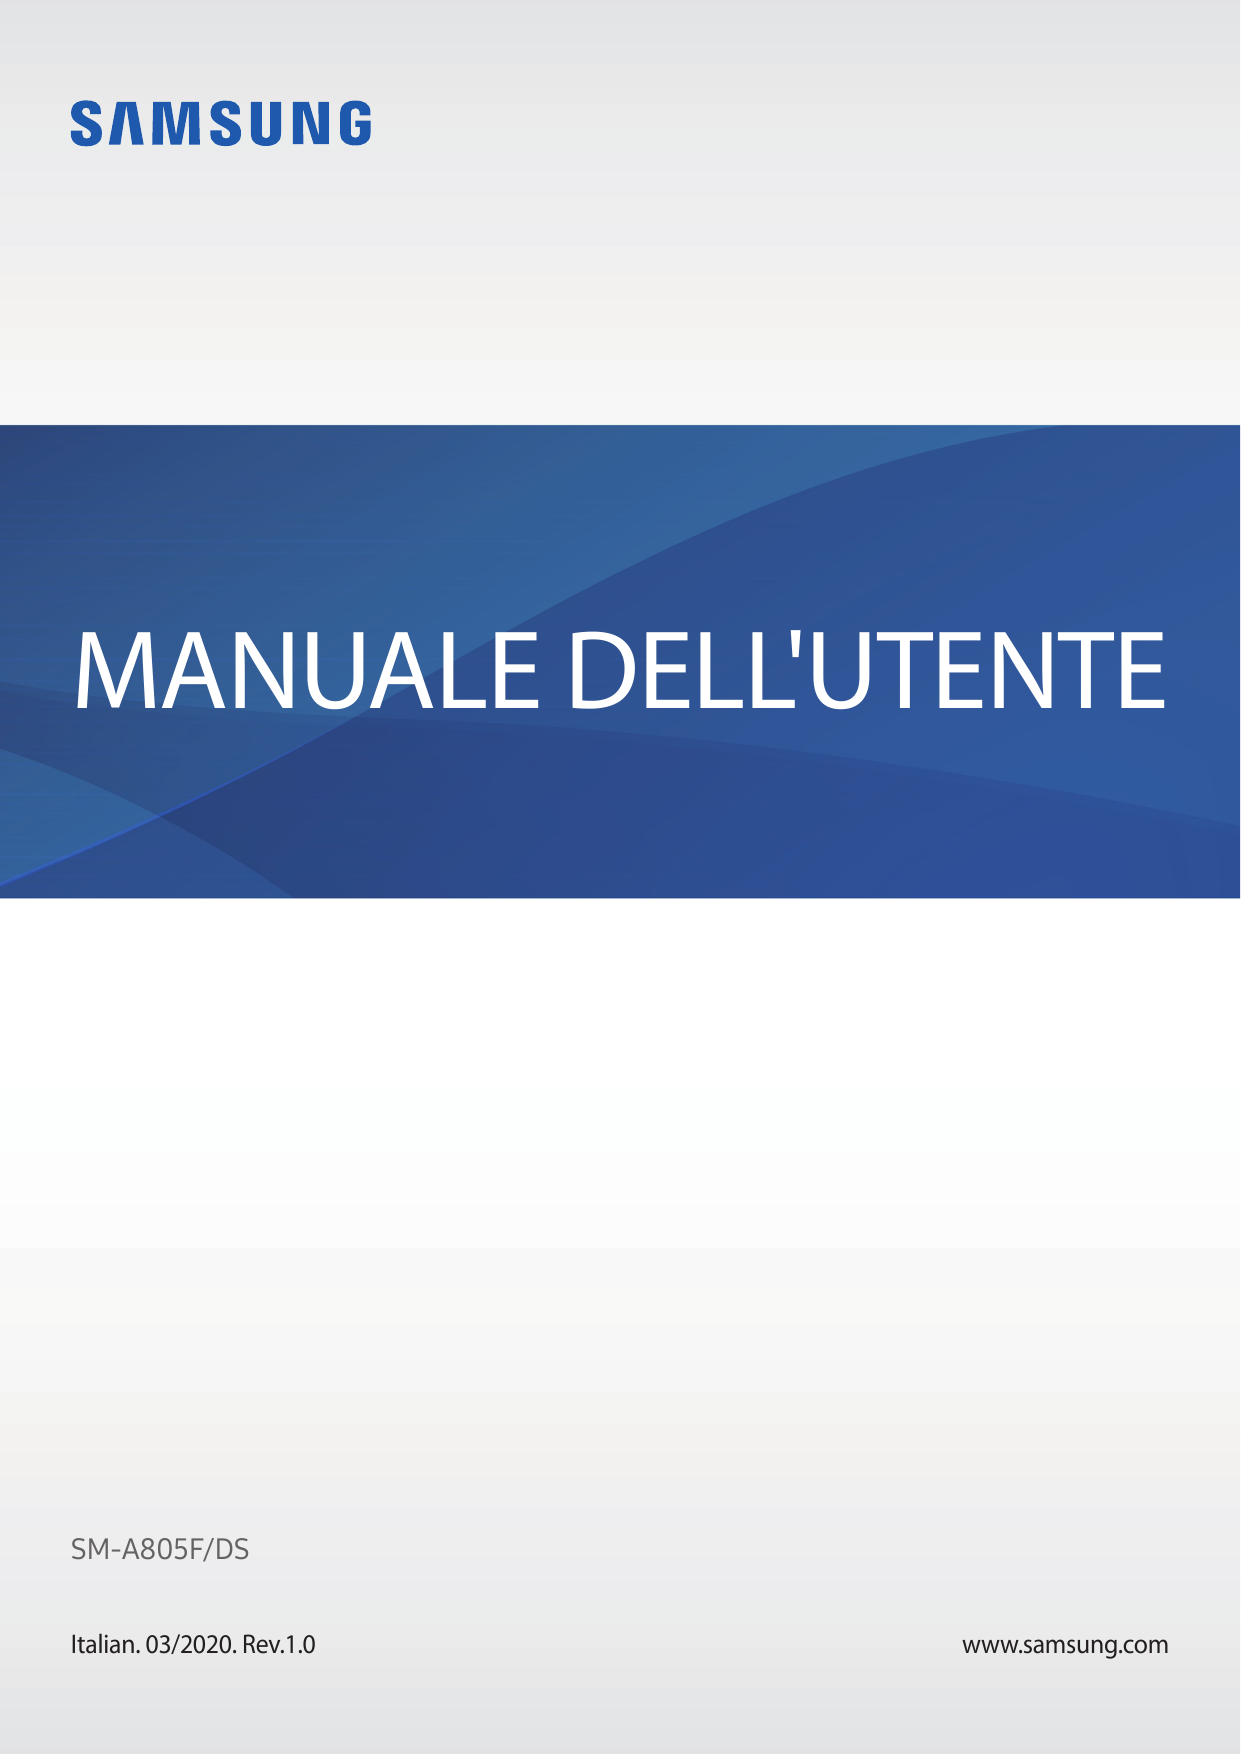 MANUALE DELL'UTENTESM-A805F/DSItalian. 03/2020. Rev.1.0www.samsung.com